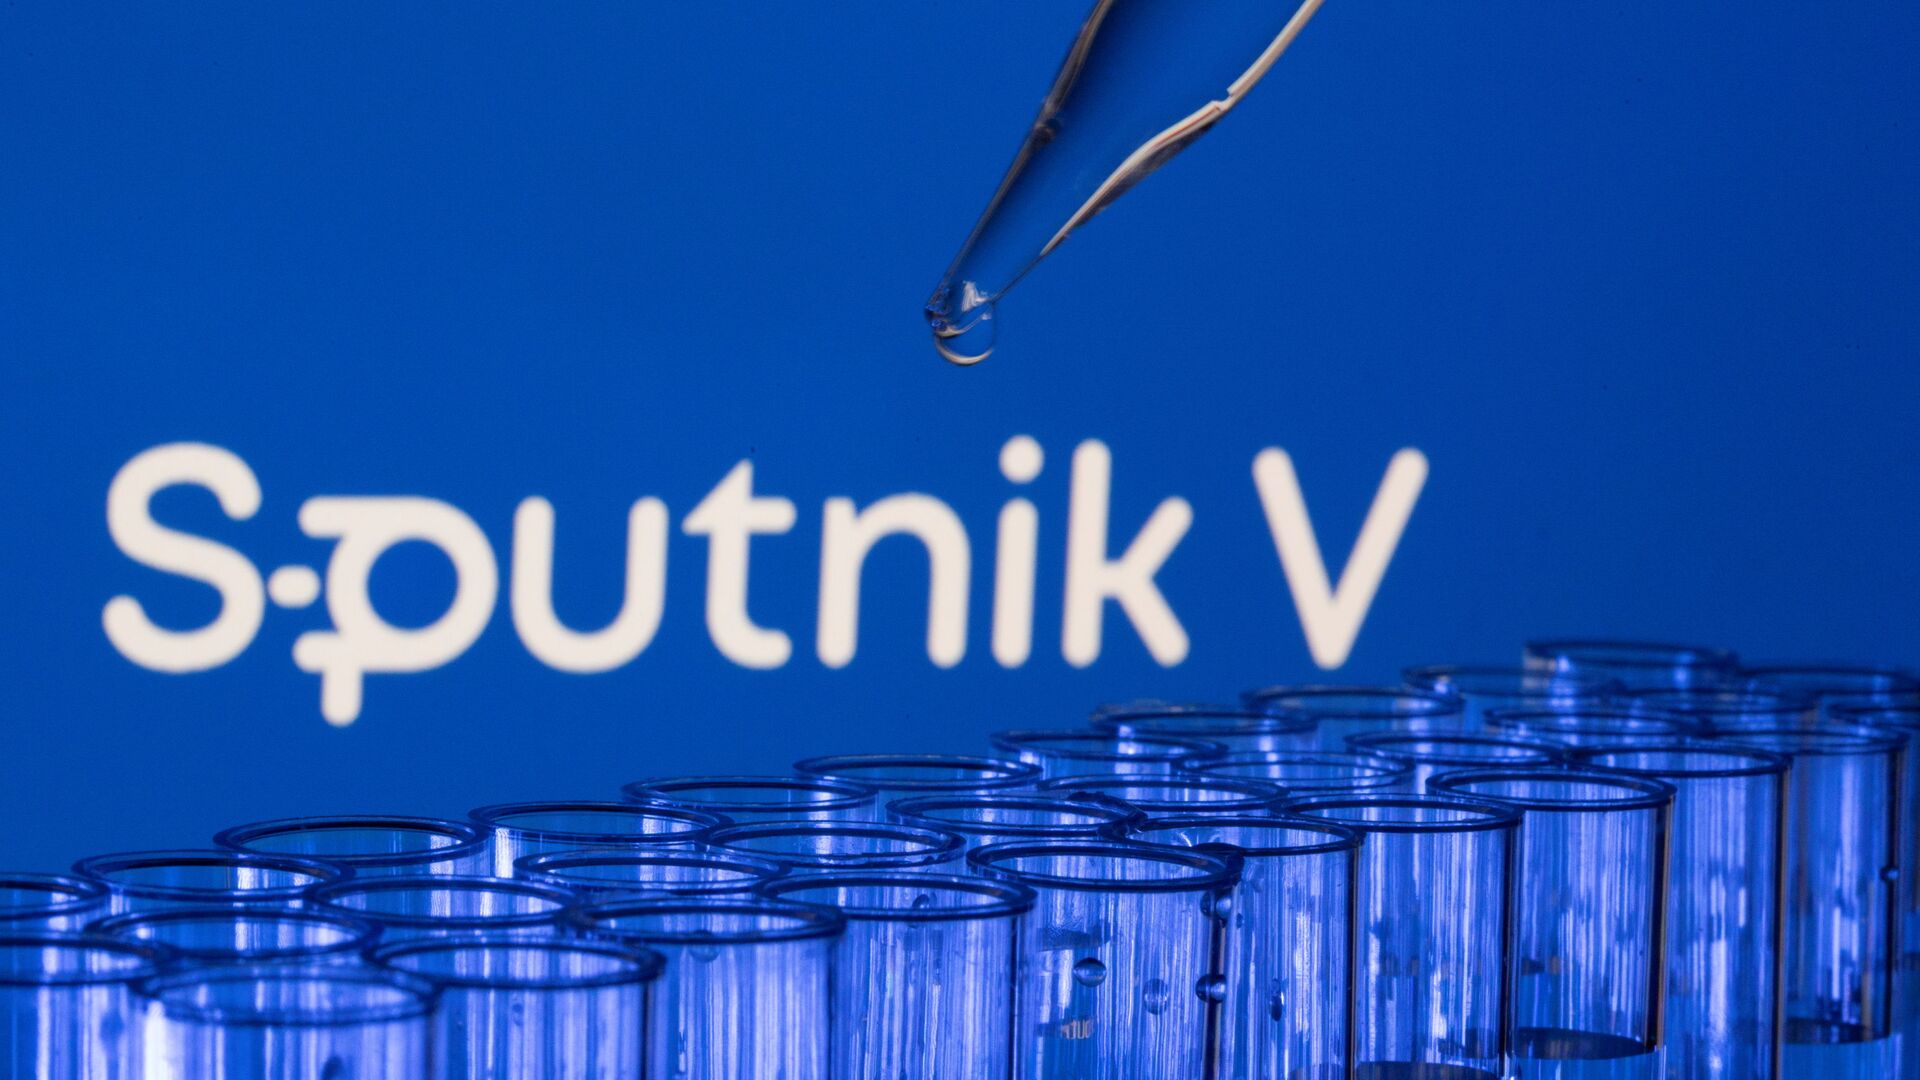 Các ống est được nhìn thấy phía trước logo Sputnik V được hiển thị trong hình minh họa này được chụp, ngày 21 tháng 5 năm 2021. - Sputnik Việt Nam, 1920, 03.12.2021